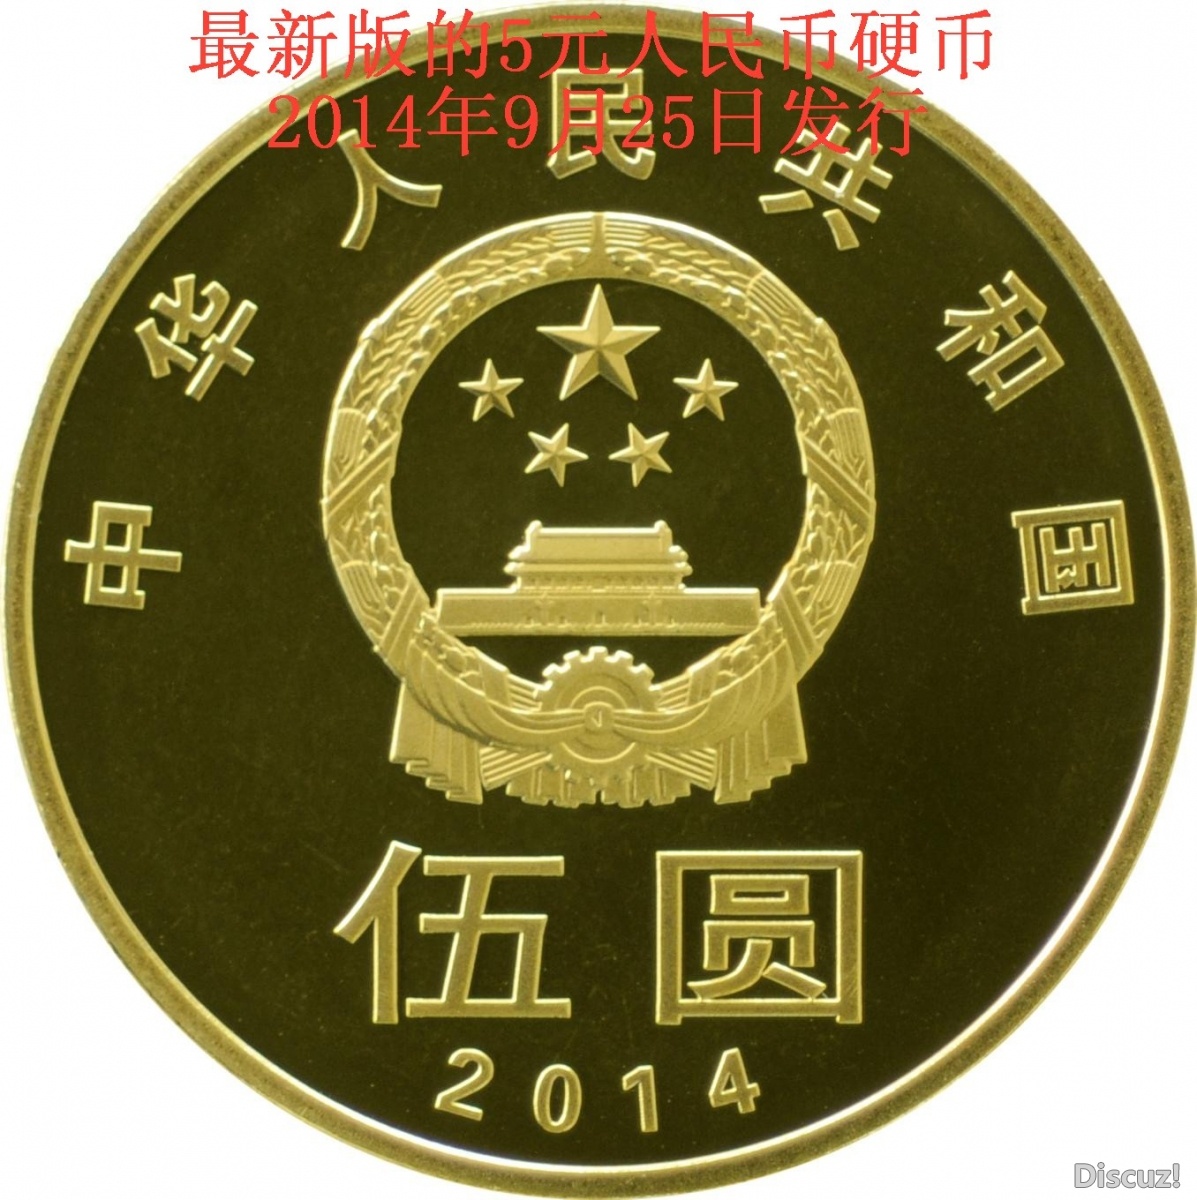 时事快讯央行将于2014年9月25日发行新版5元人民币硬币